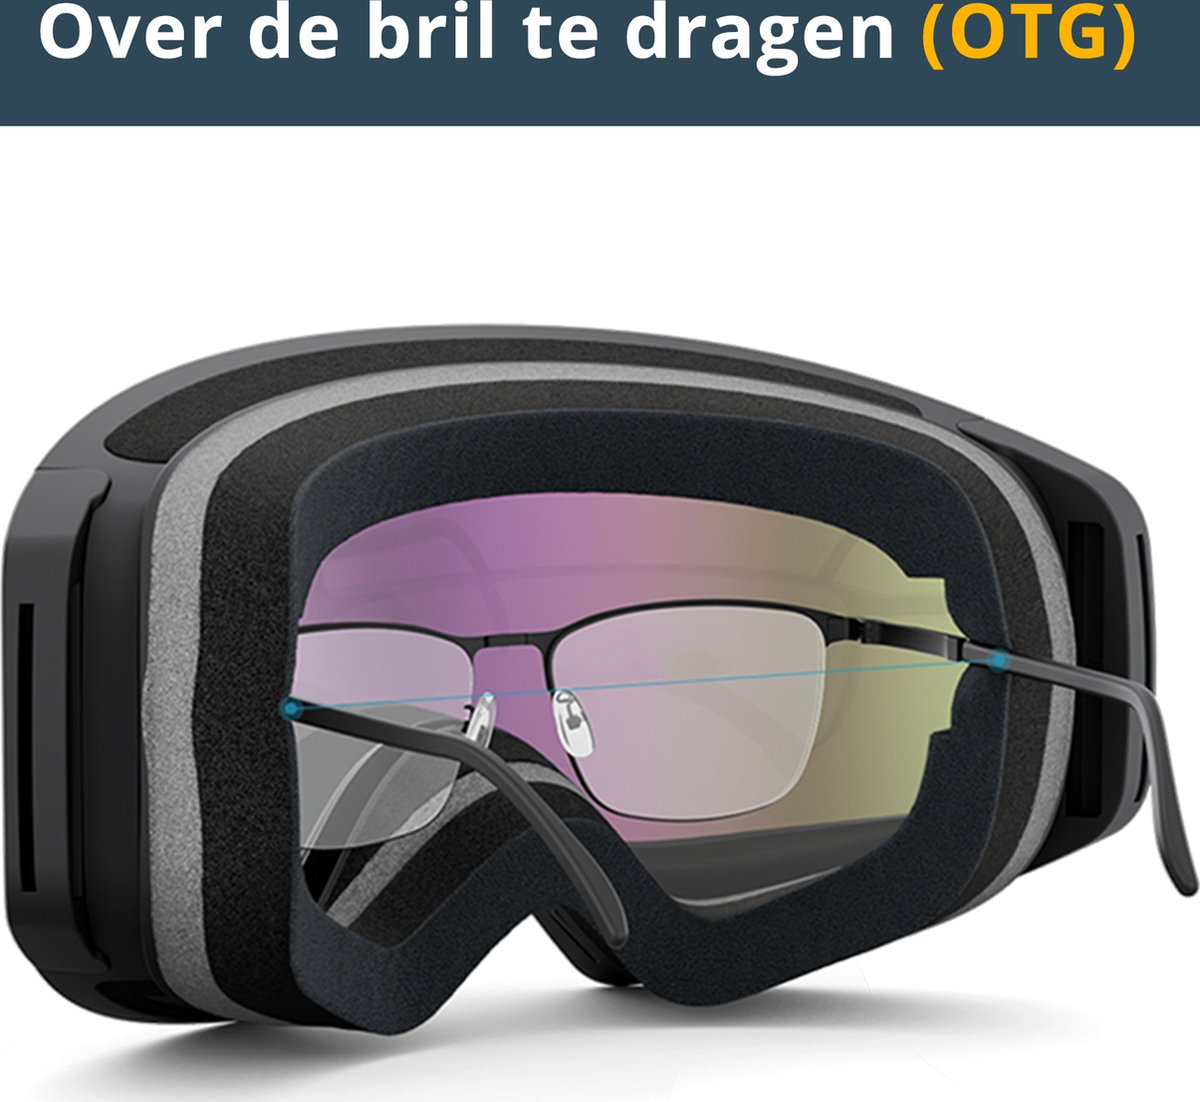 Oakley Étui Multi Unit pour lunette de Ski